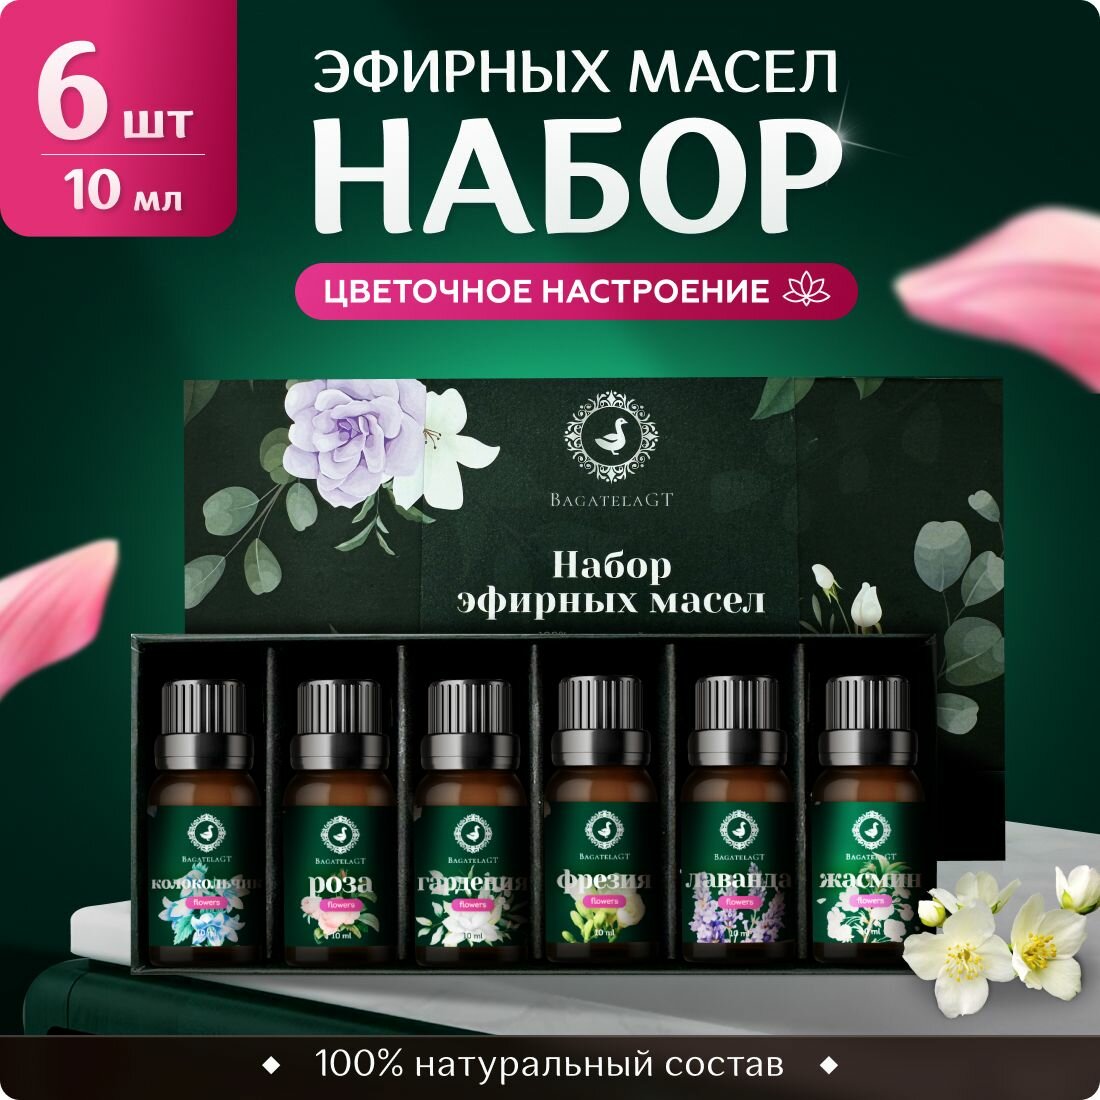 Набор эфирных аромамасел "Flowers", 6 штук по 10 мл / 100% натуральные масла / арома масло для диффузора и бани